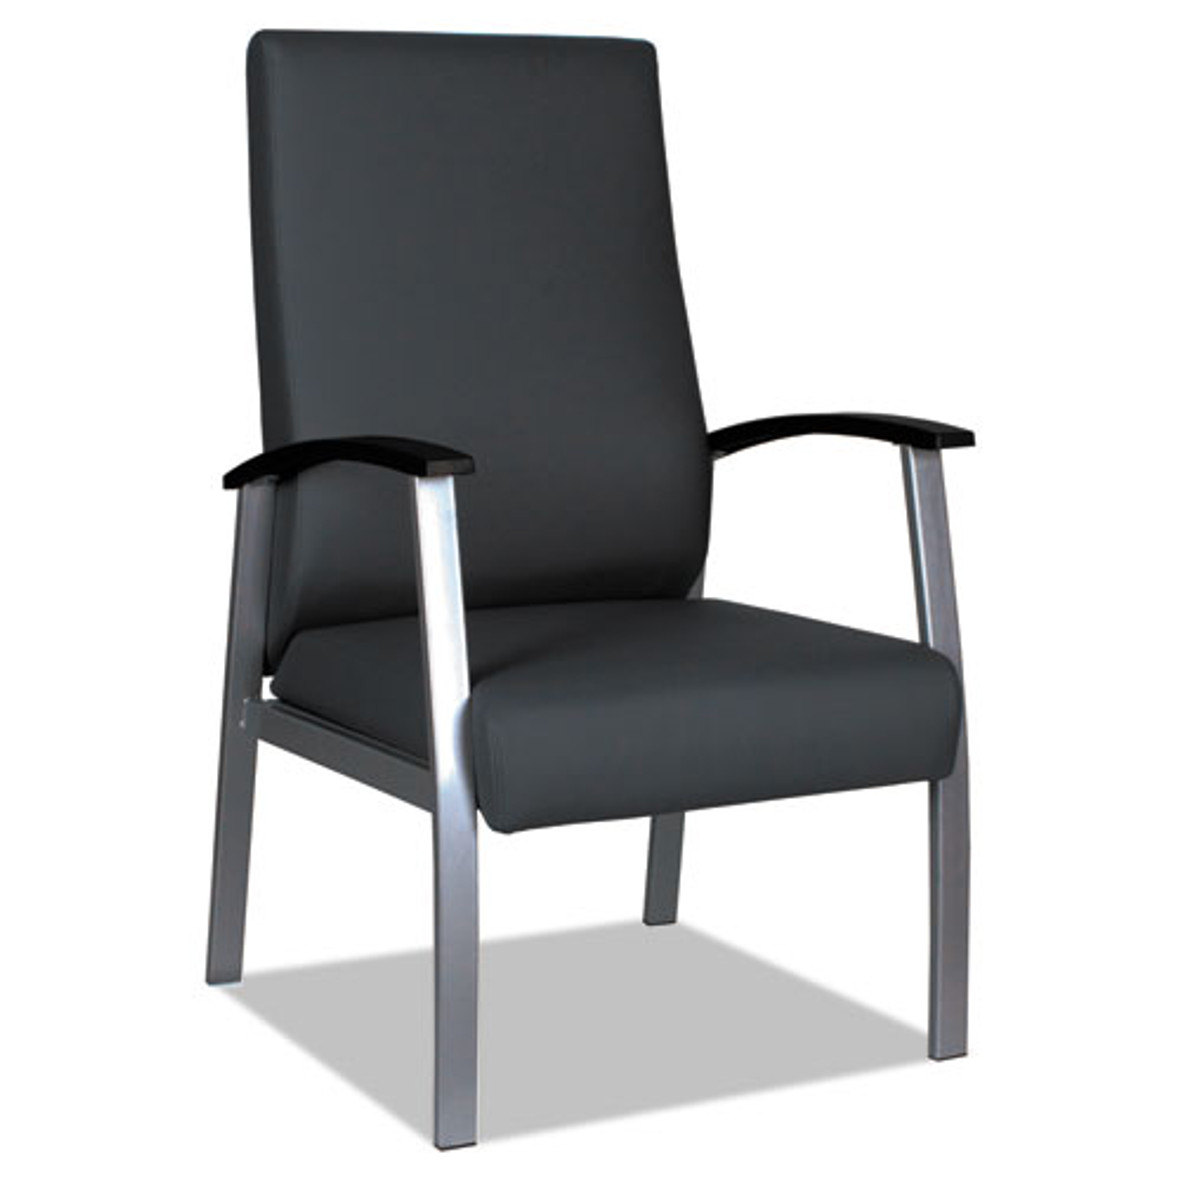 Alera® Metalounge Series High-Back Guest Chair, 24.6" x 26.96" x 42.91", Black Seat/Back, Silver Base, 1 Each/Carton